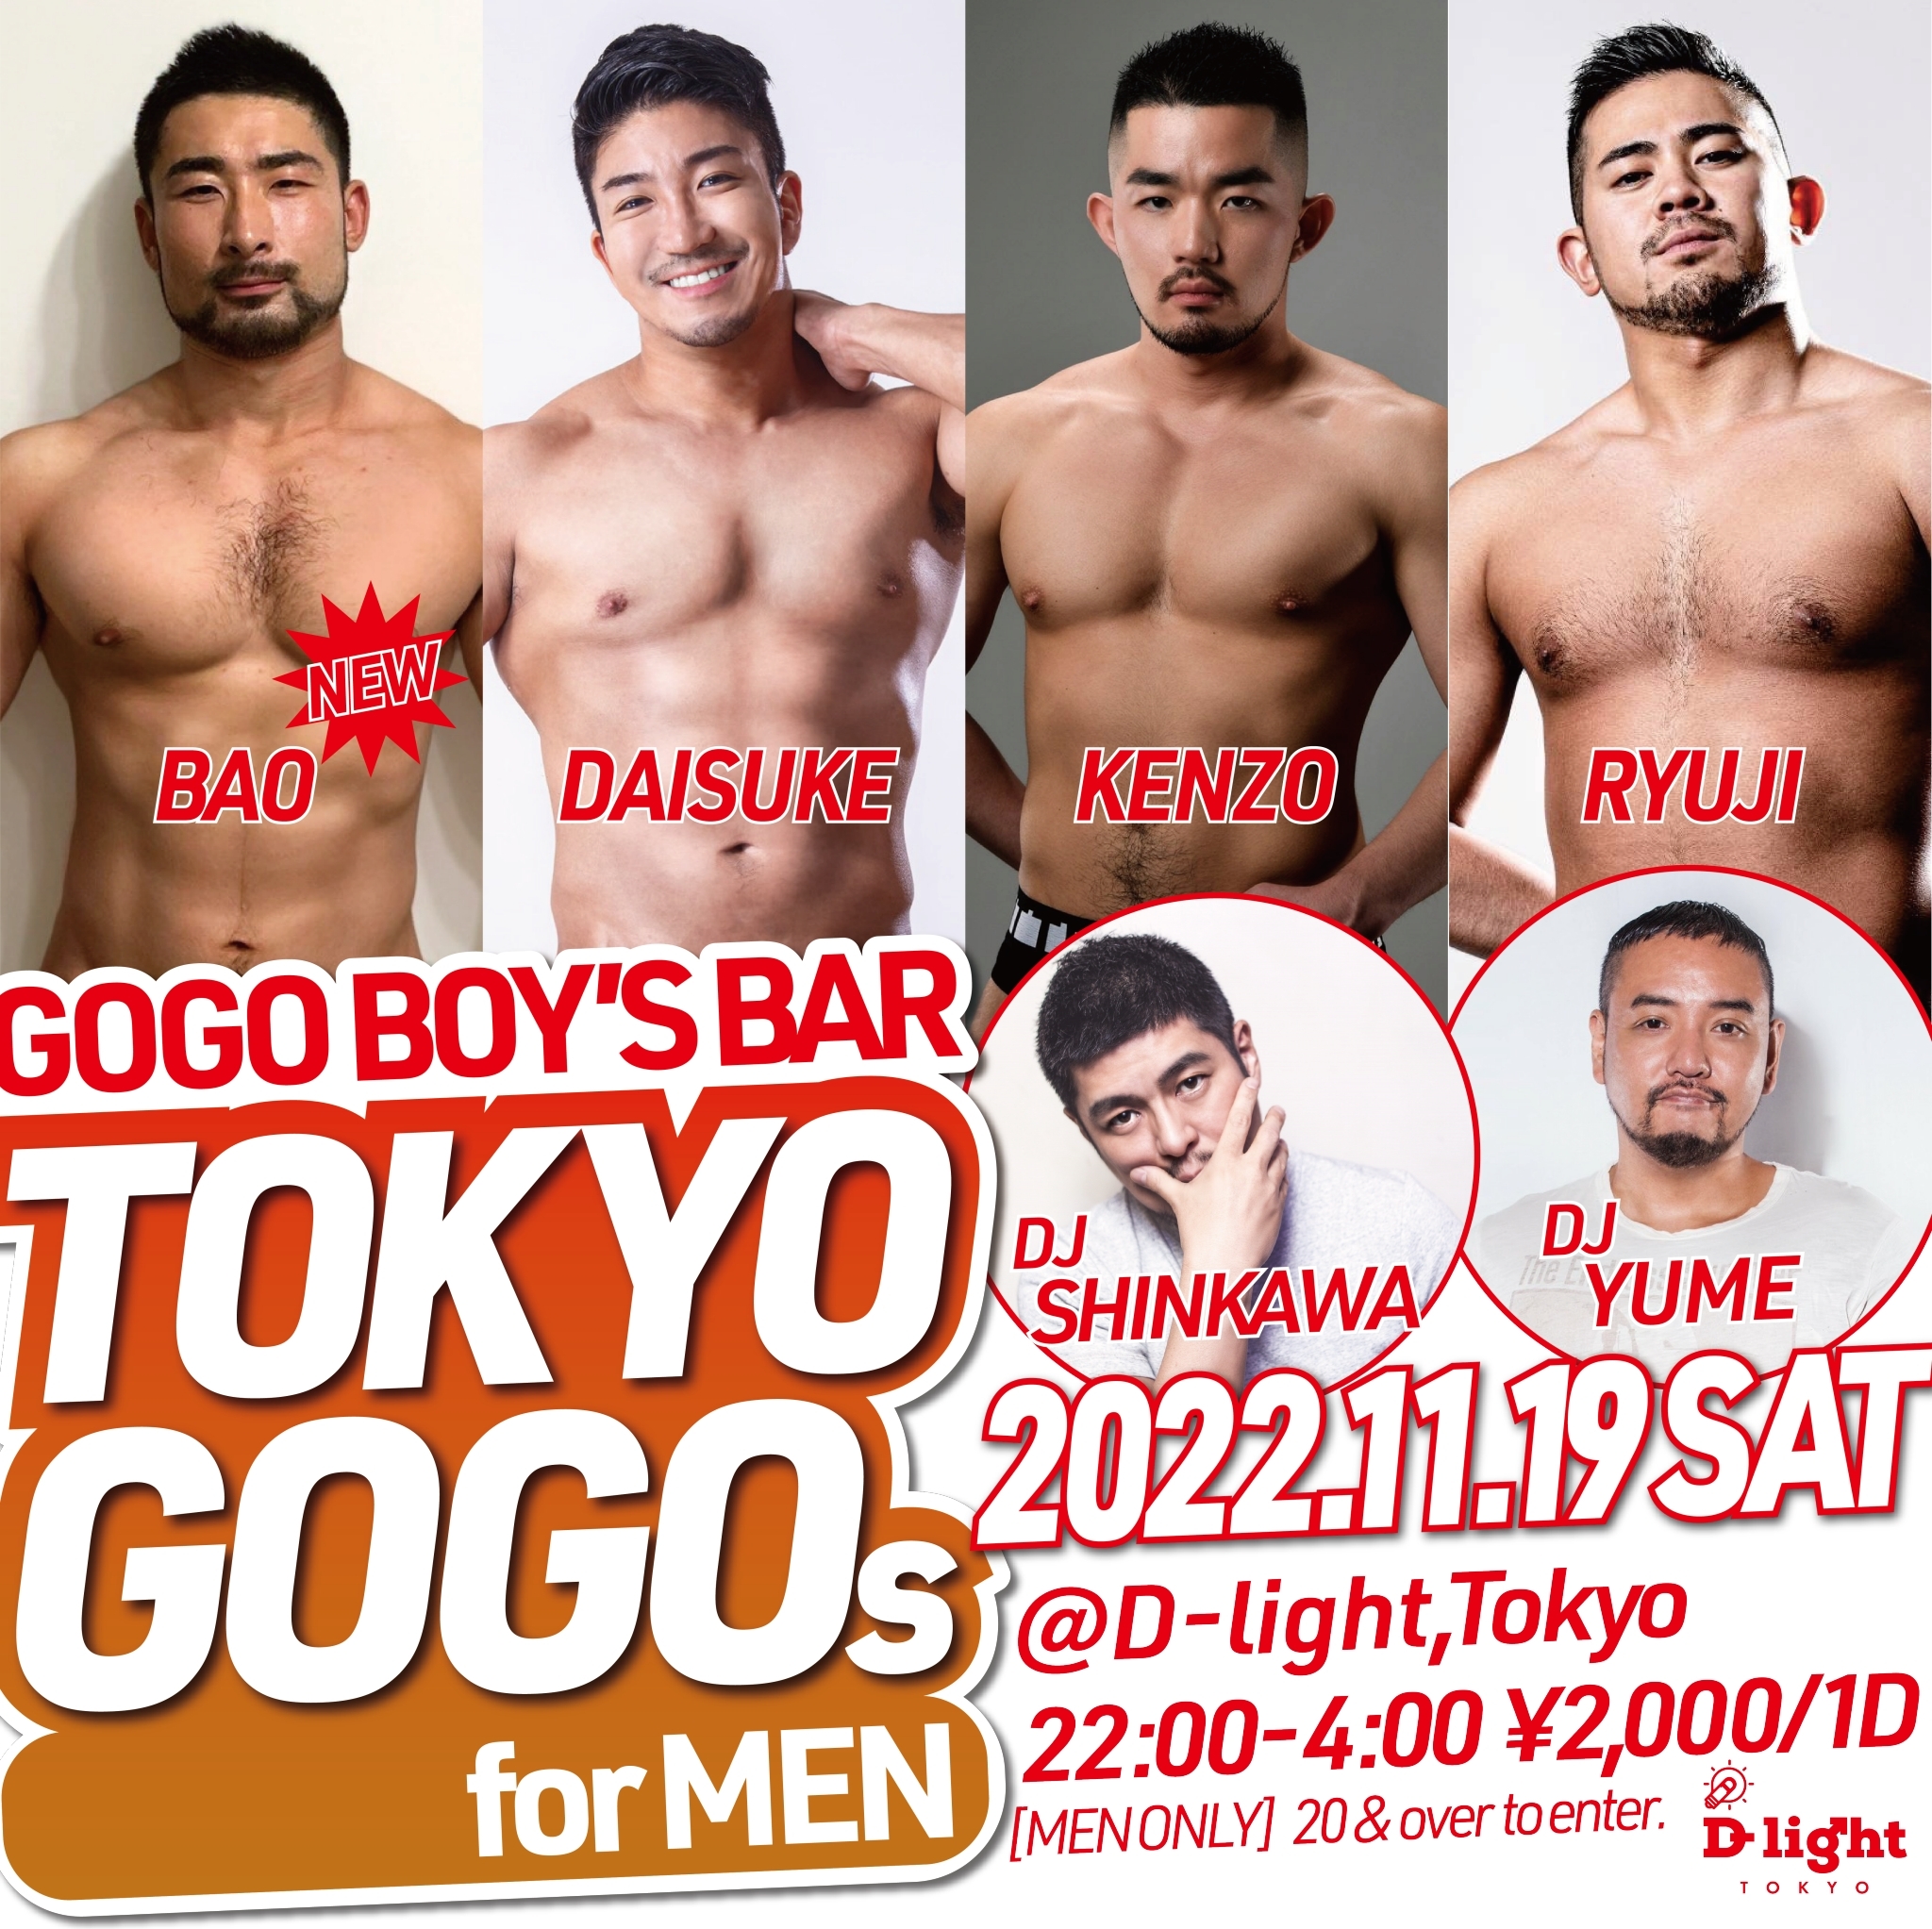 GOGO BOYS' BAR "TOKYO GOGOs for MEN"